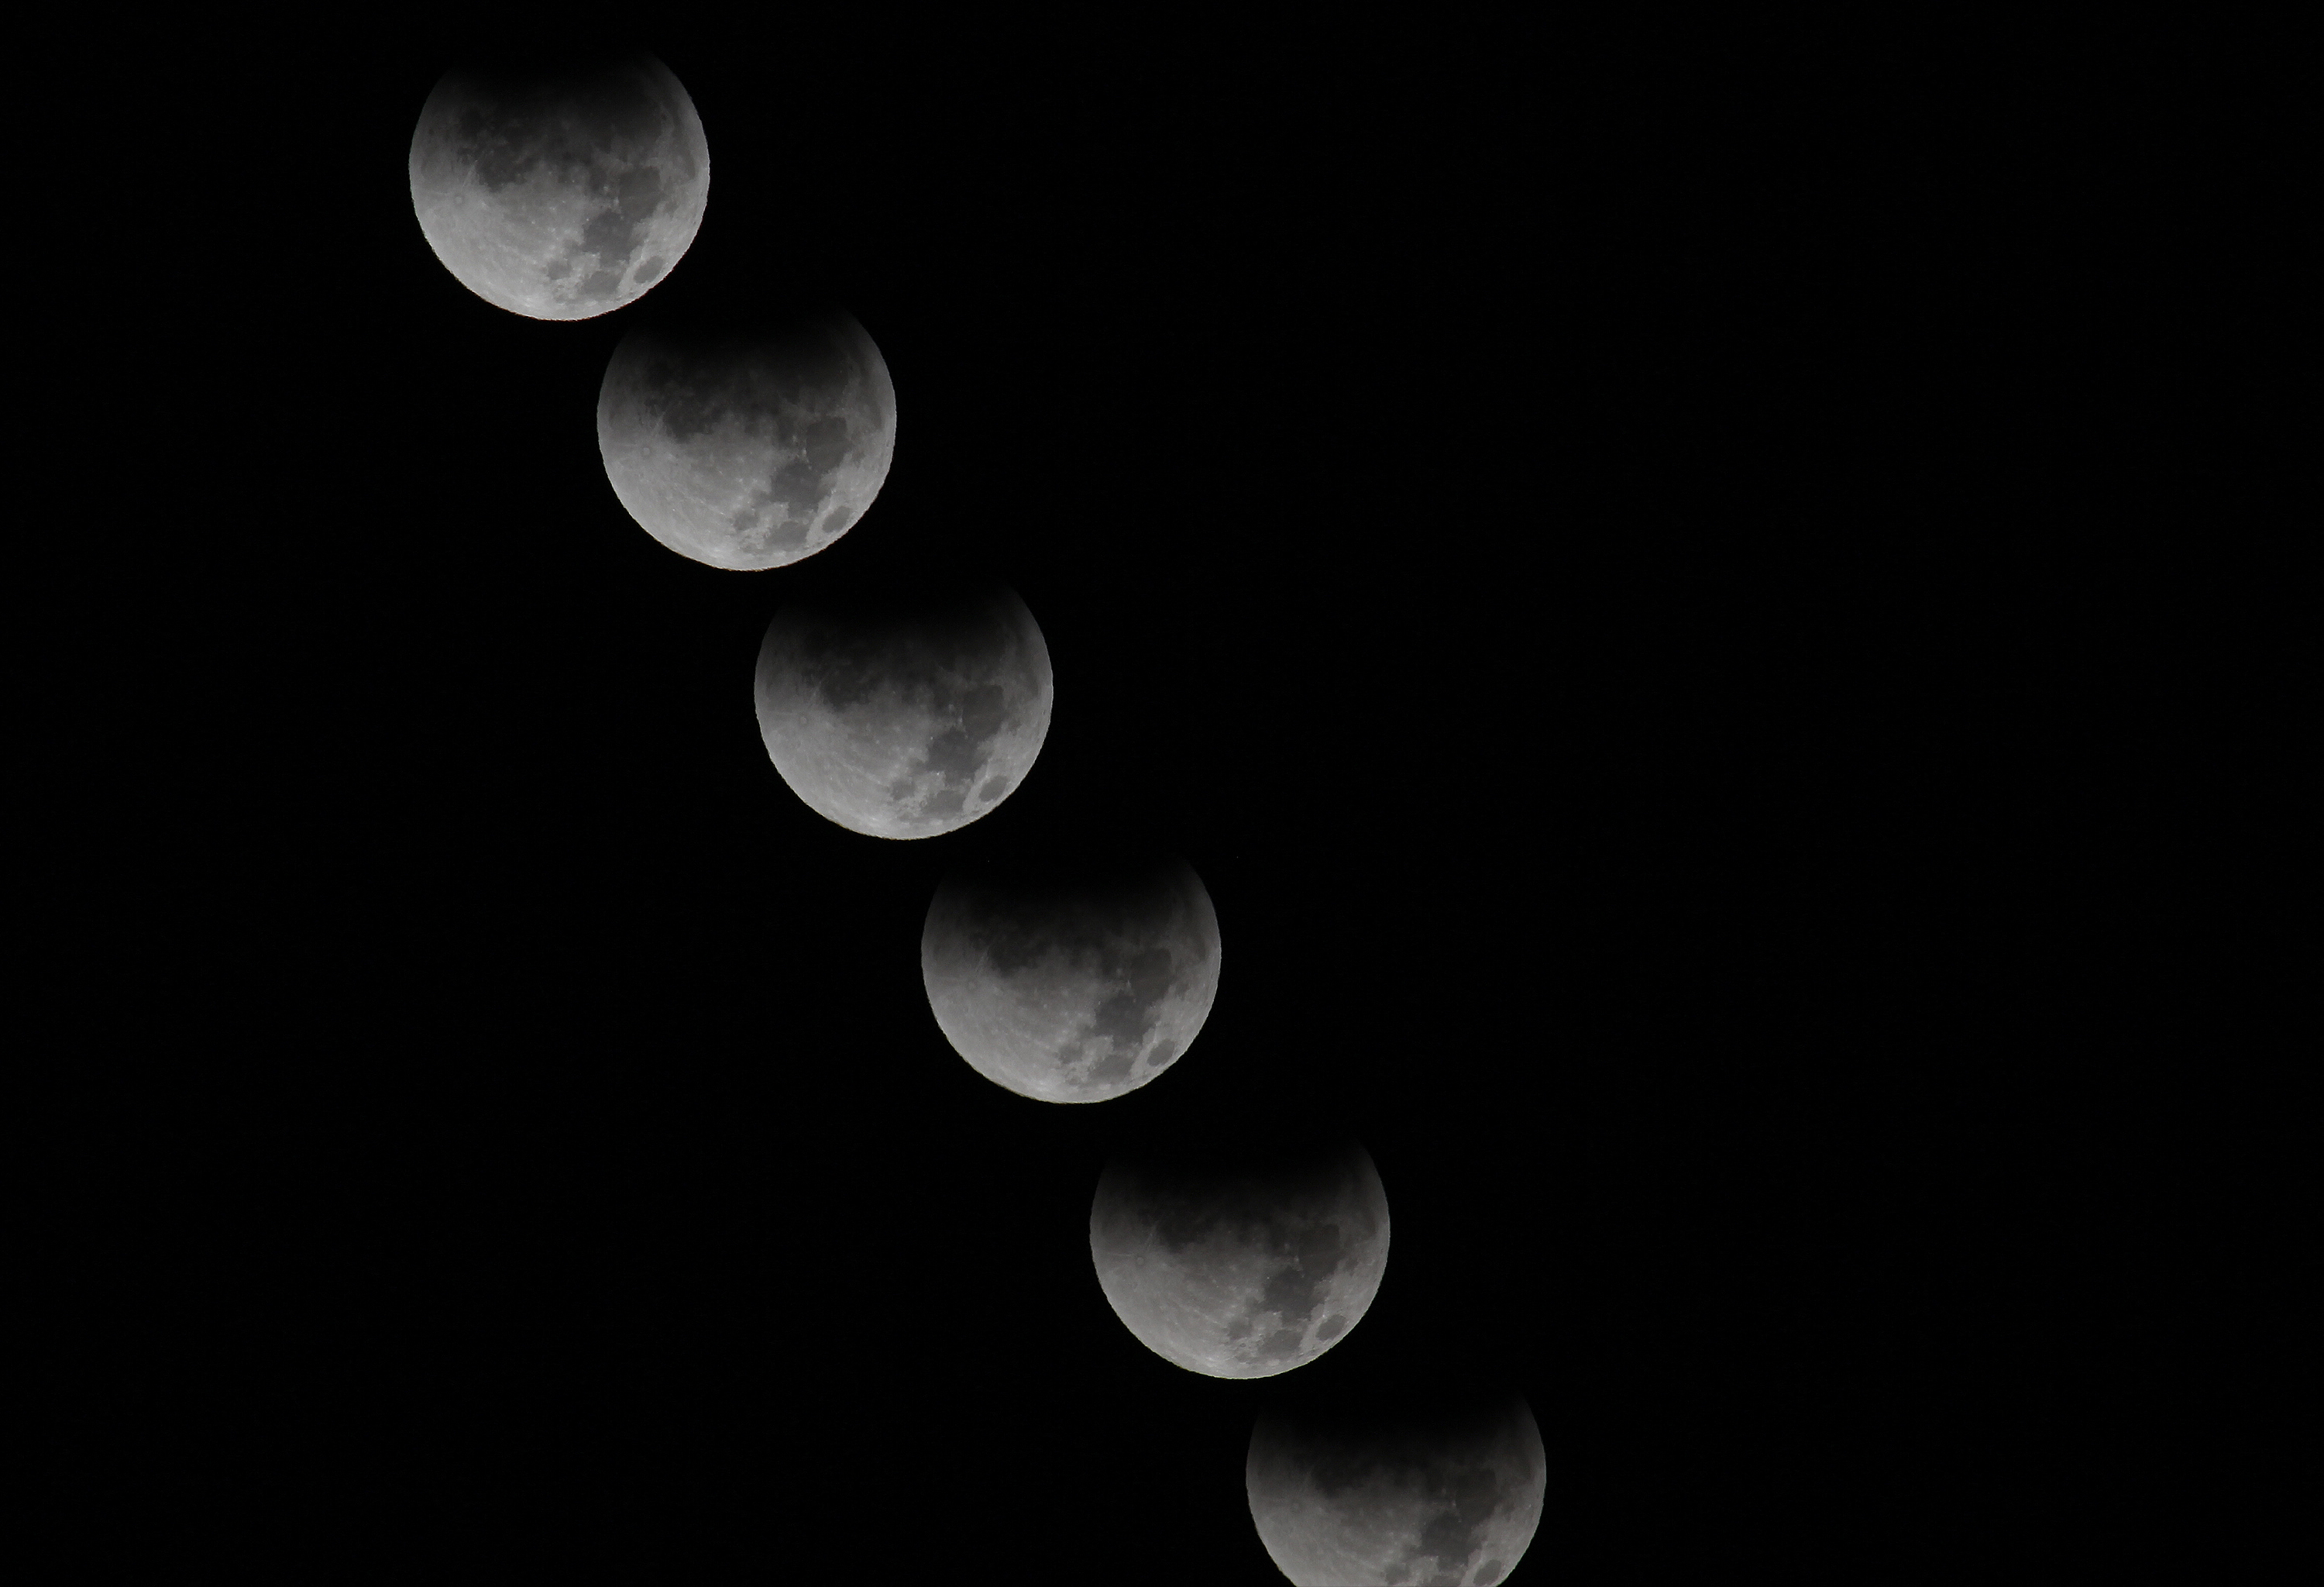 Joe Dobrow photo of a lunar eclipse, 12-10-11